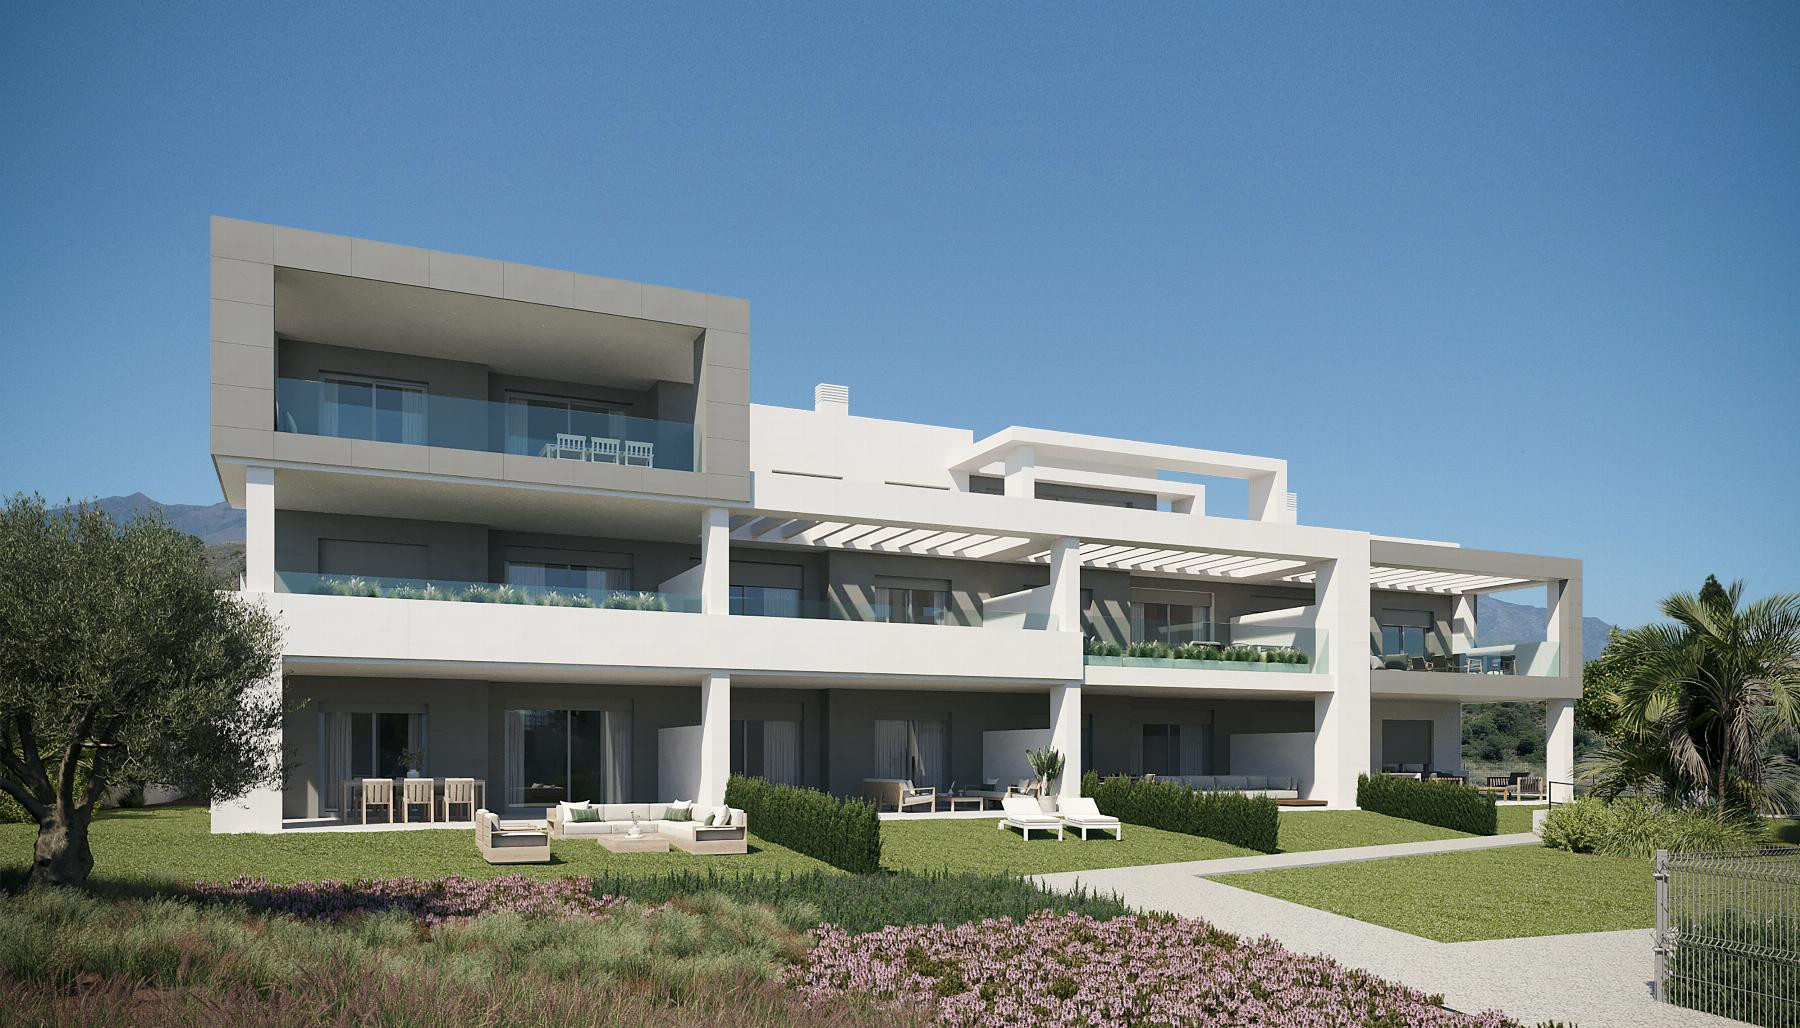 Vanian Gardens III: Exclusive homes from 1 to 4 bedrooms located in Estepona.